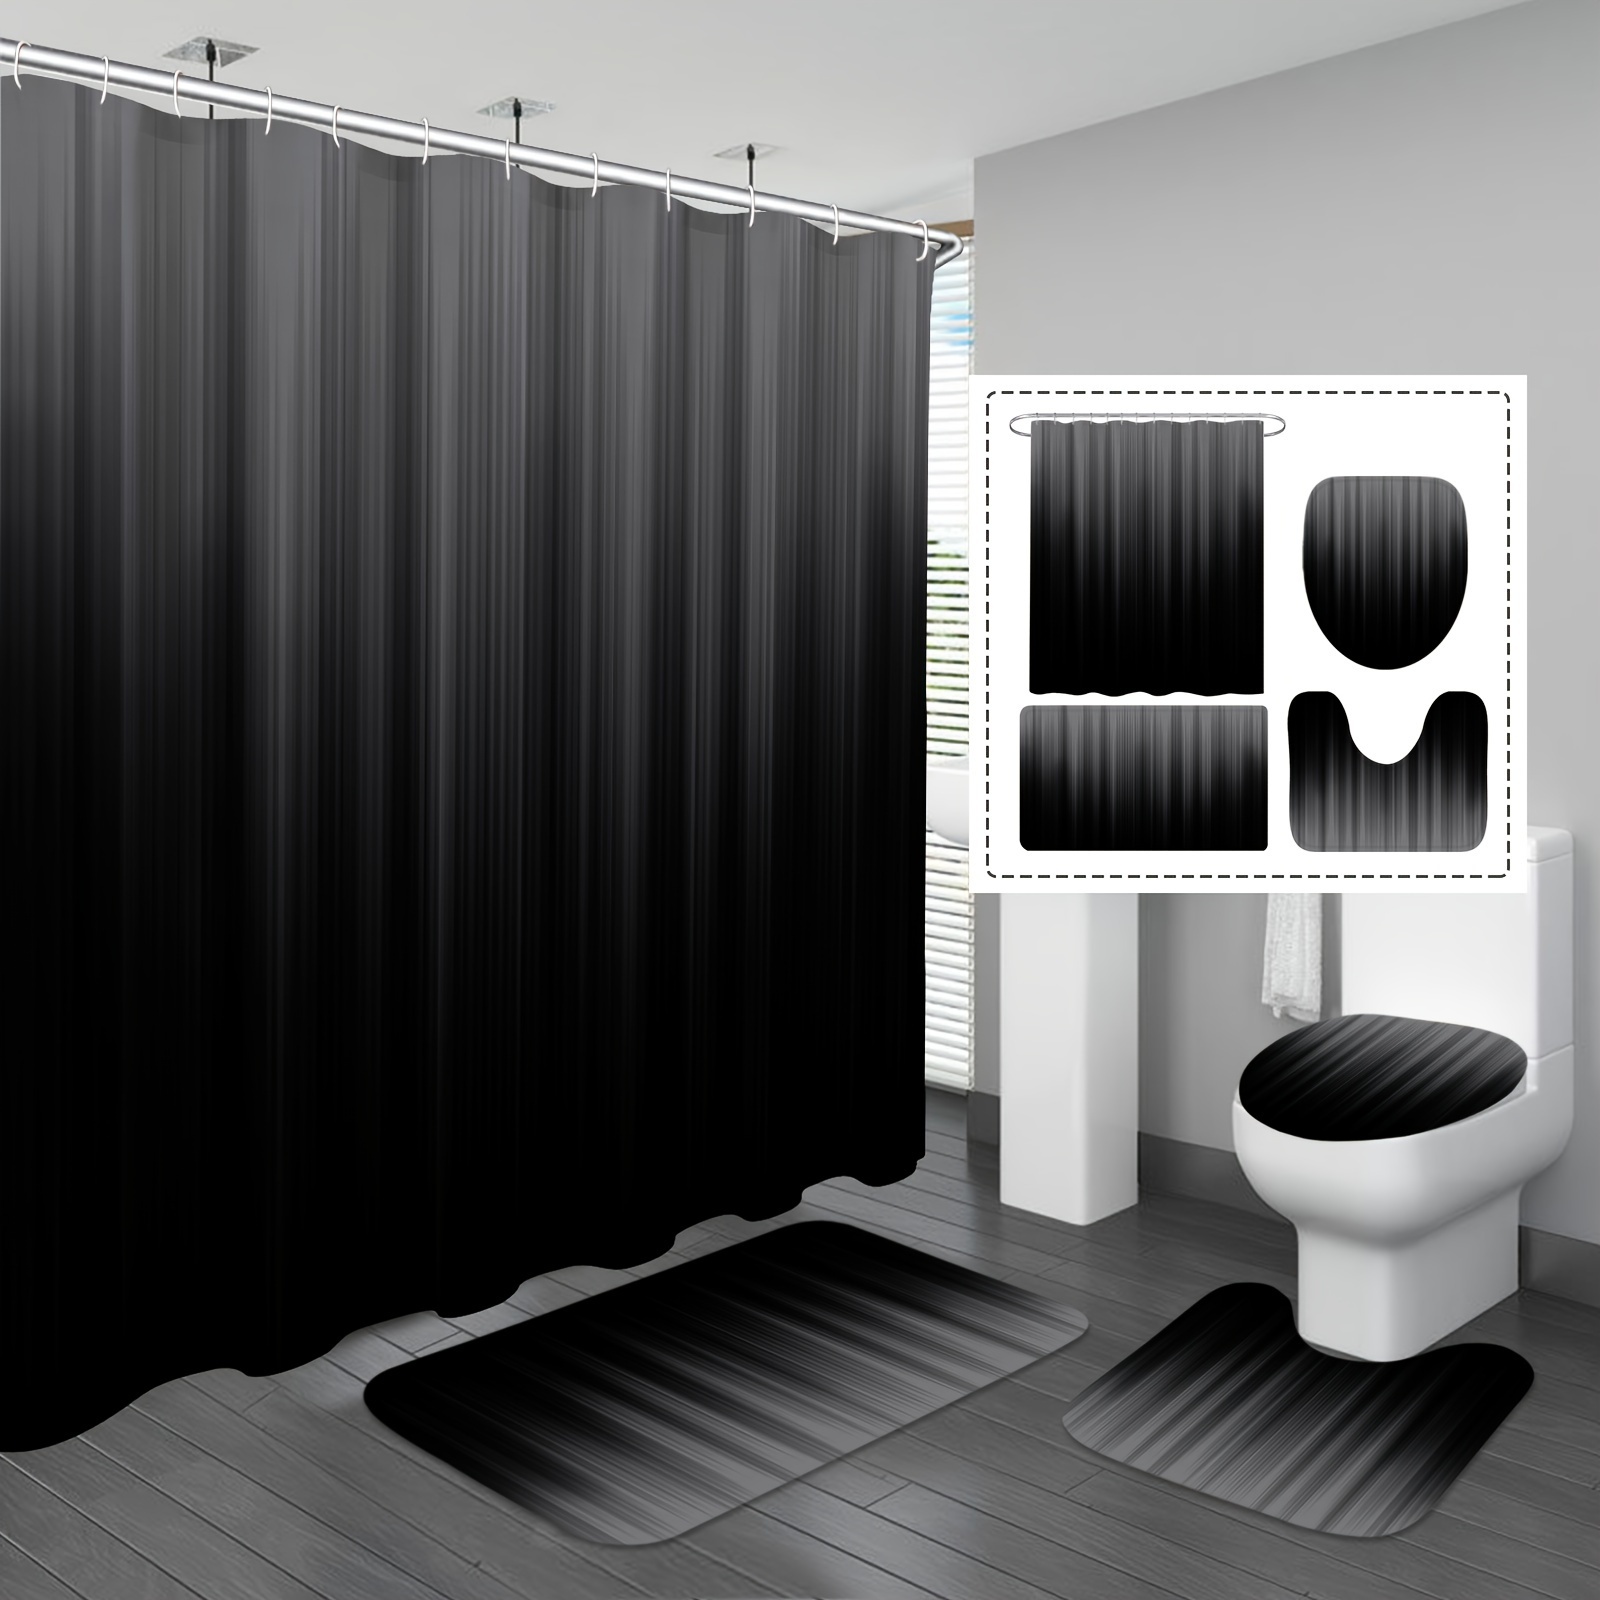 Cortina de ducha moderna minimalista blanca para baño, 71 x 71 pulgadas,  juego de cortinas de ducha de tela transparente con 12 ganchos